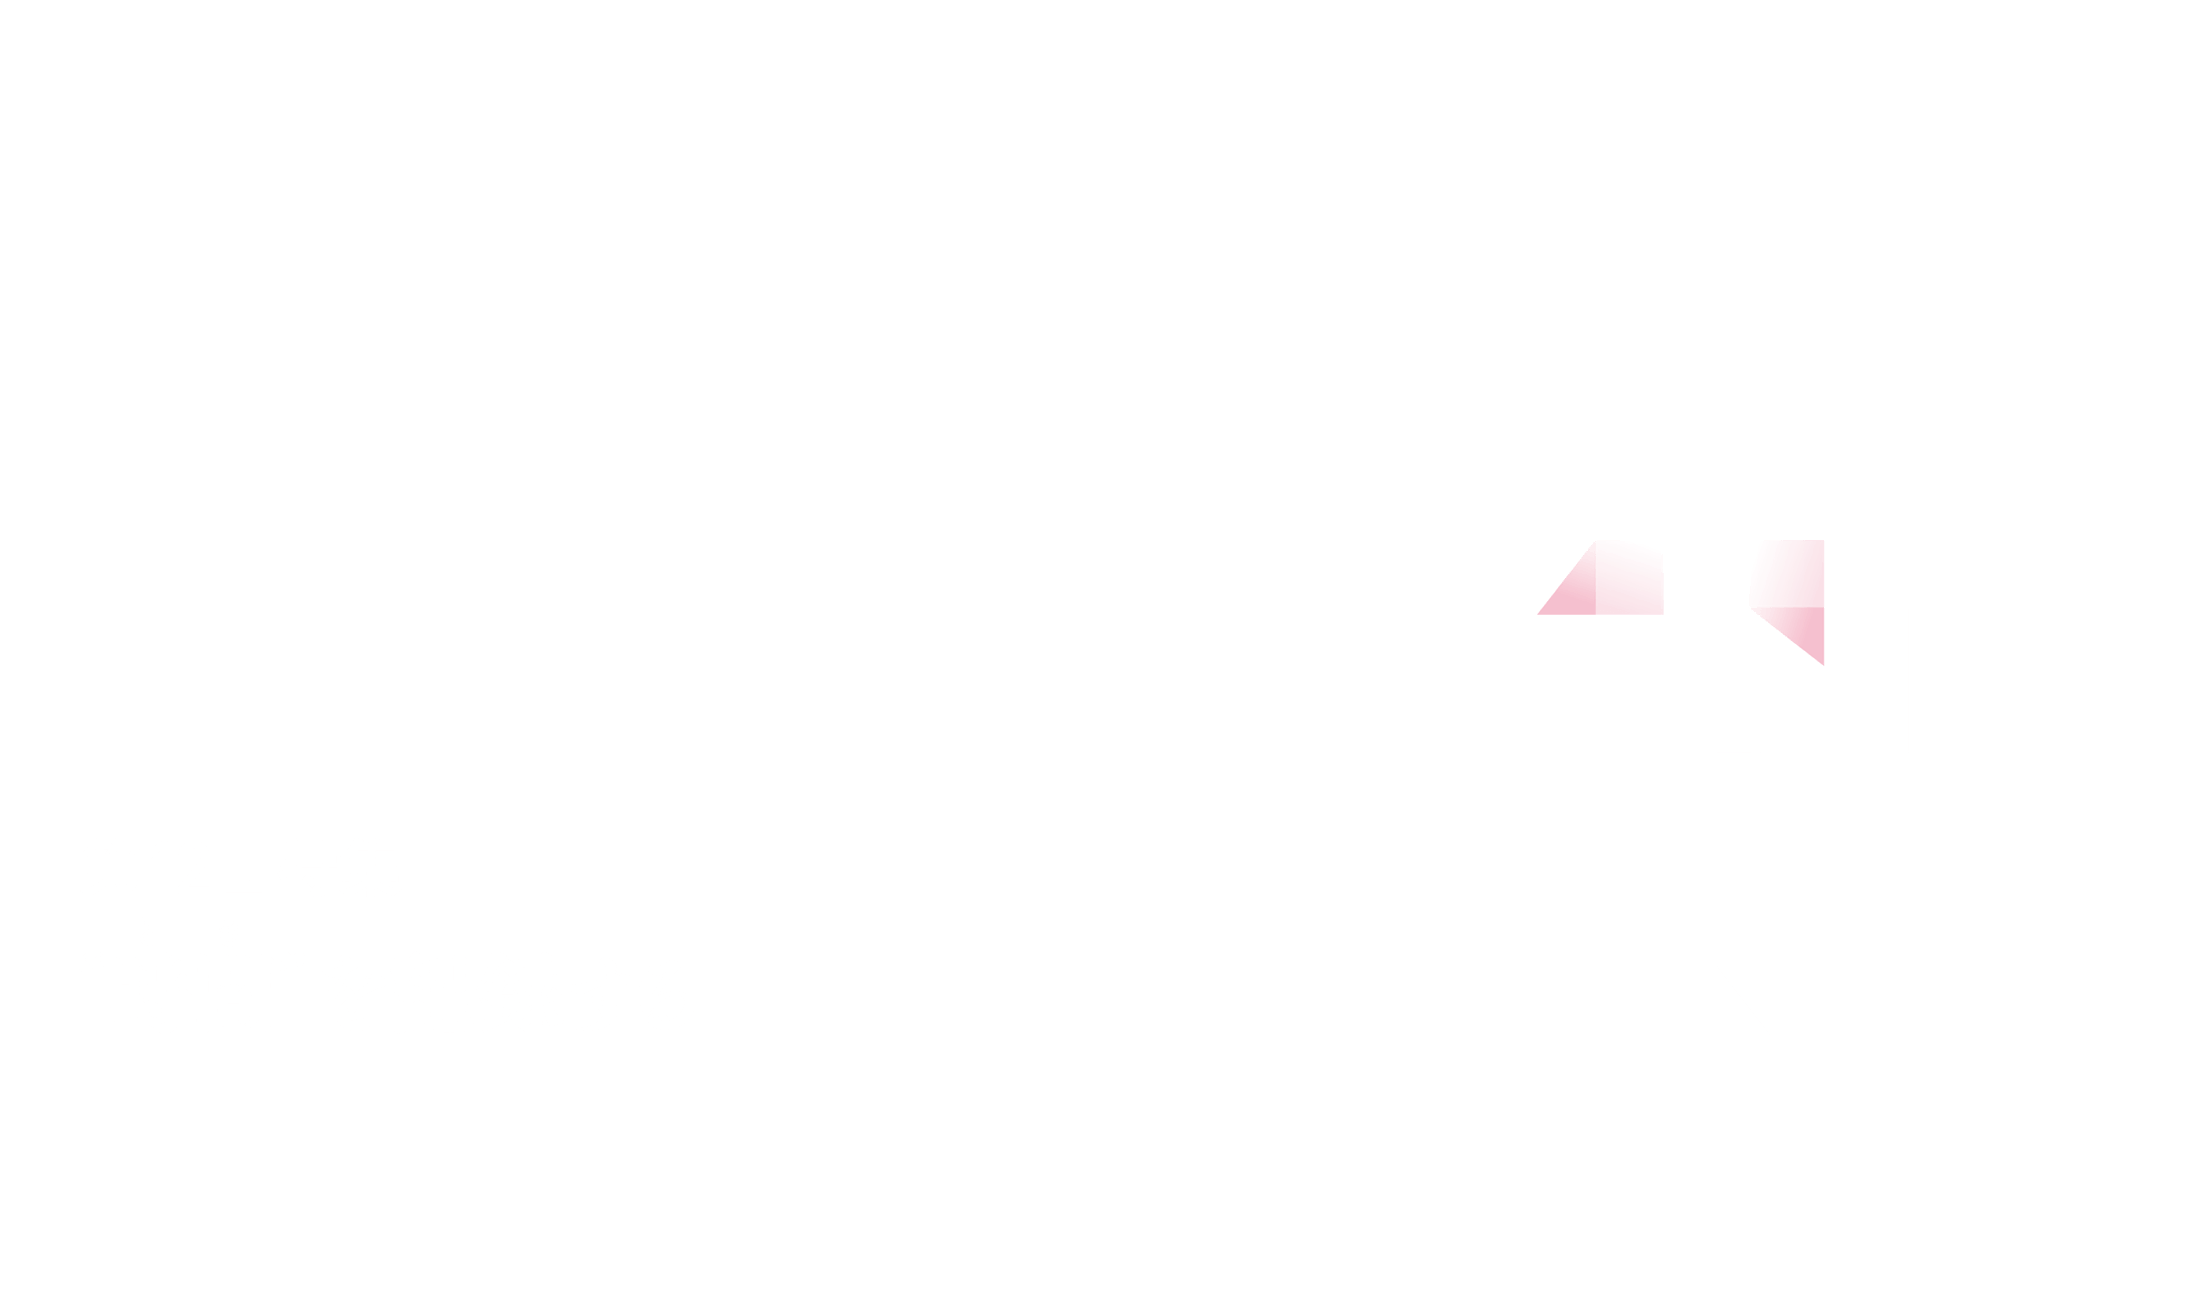 第12回 座・高円寺ドキュメンタリーフェスティバル